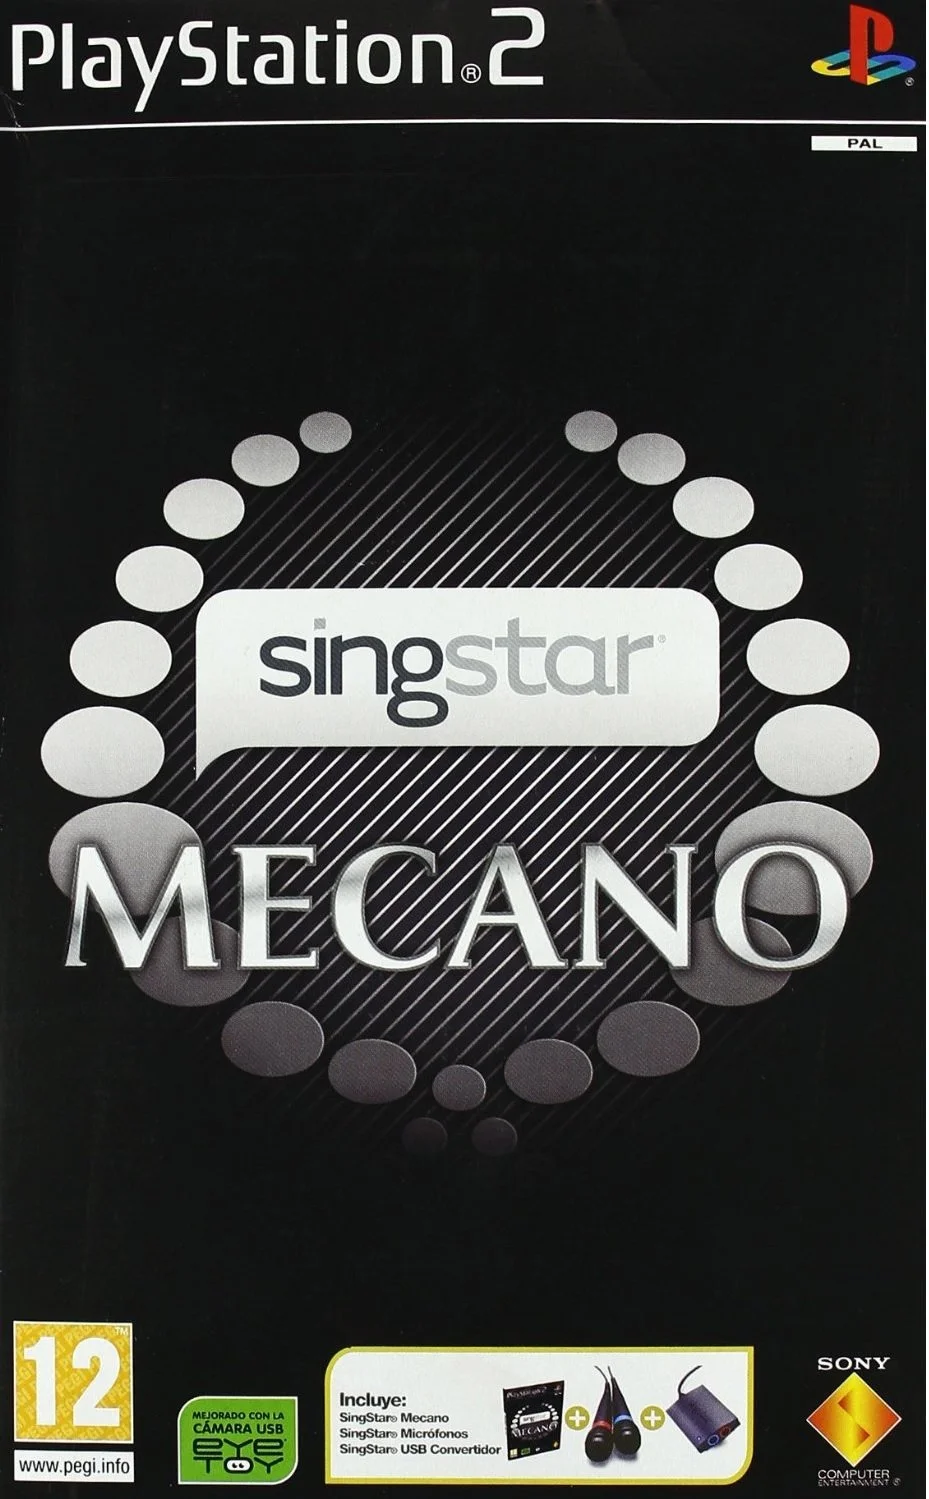 SingStar Mecano